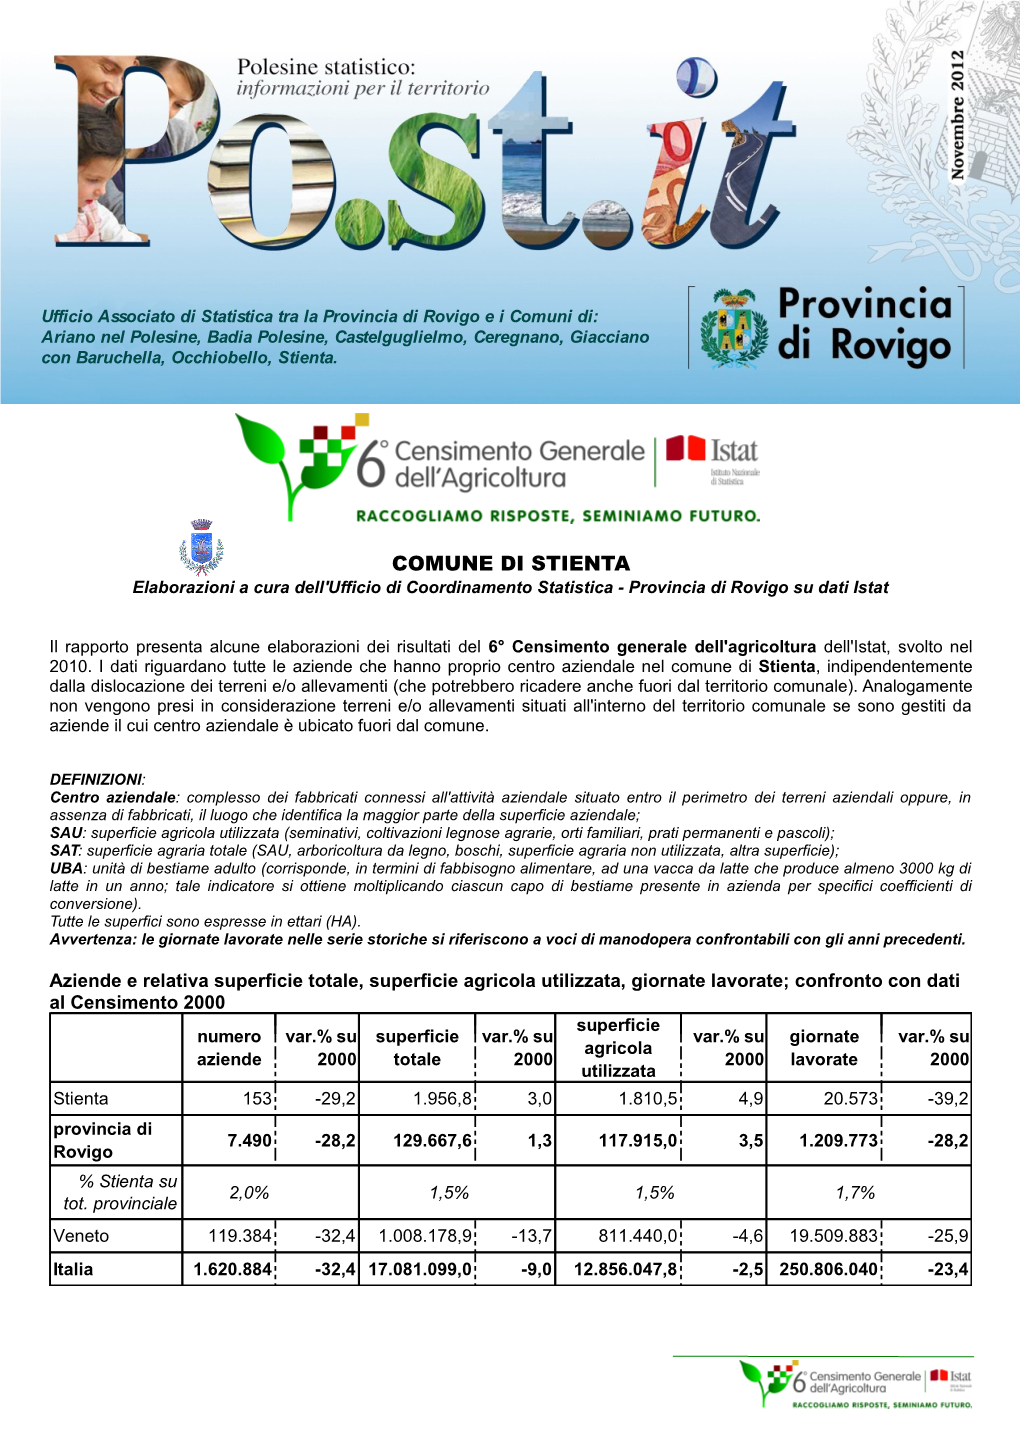 COMUNE DI STIENTA Elaborazioni a Cura Dell'ufficio Di Coordinamento Statistica - Provincia Di Rovigo Su Dati Istat